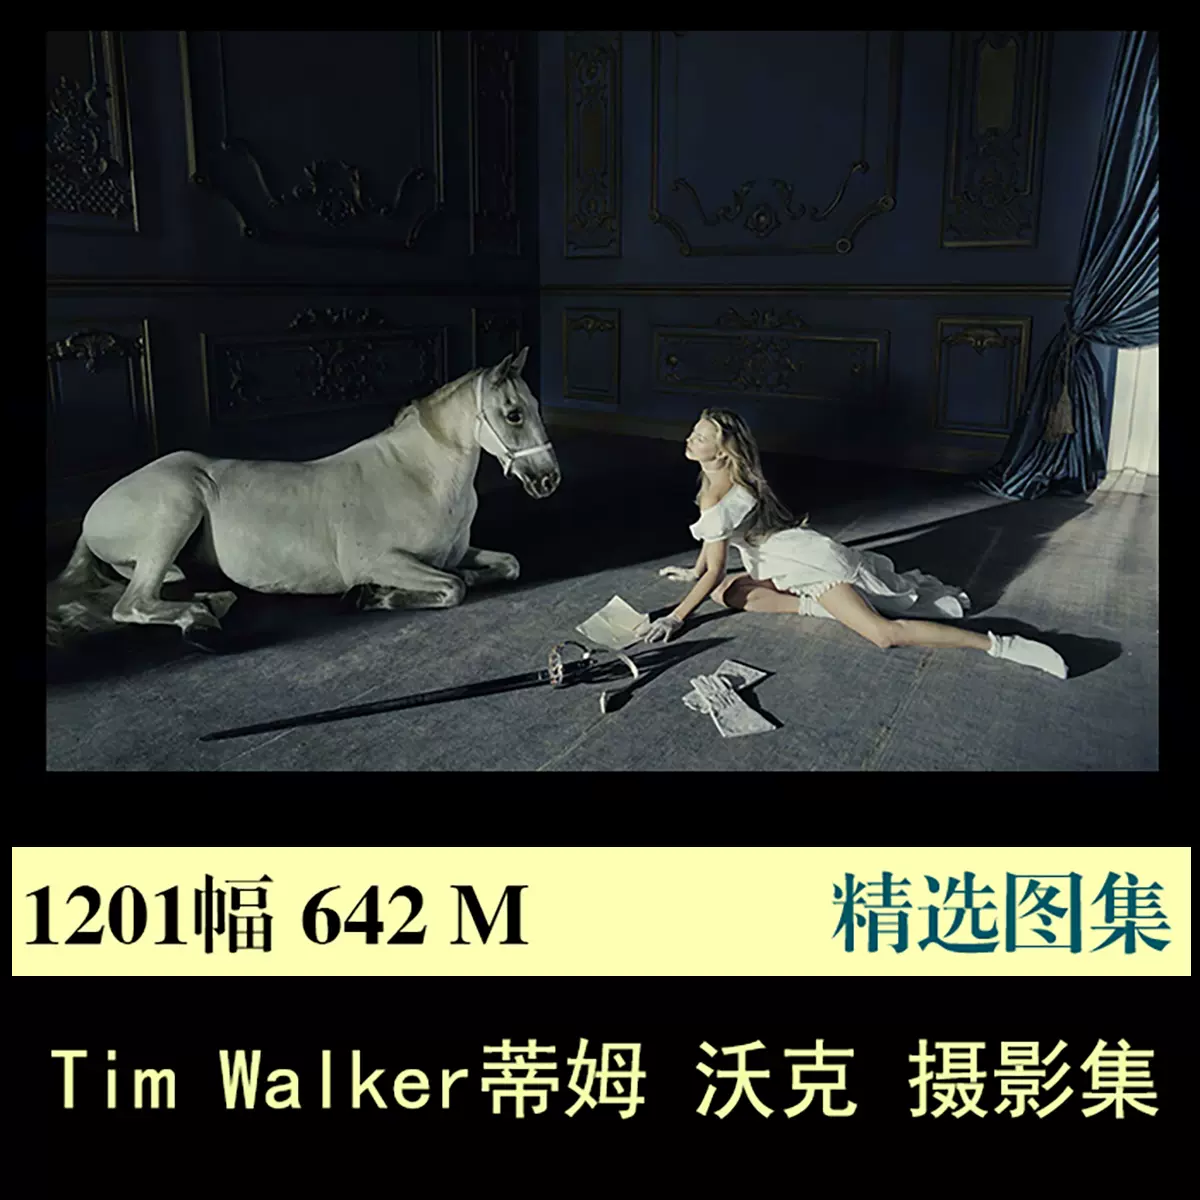 Tim Walker蒂姆沃克写真摄影集作品图集参考资料素材电子版合集-Taobao